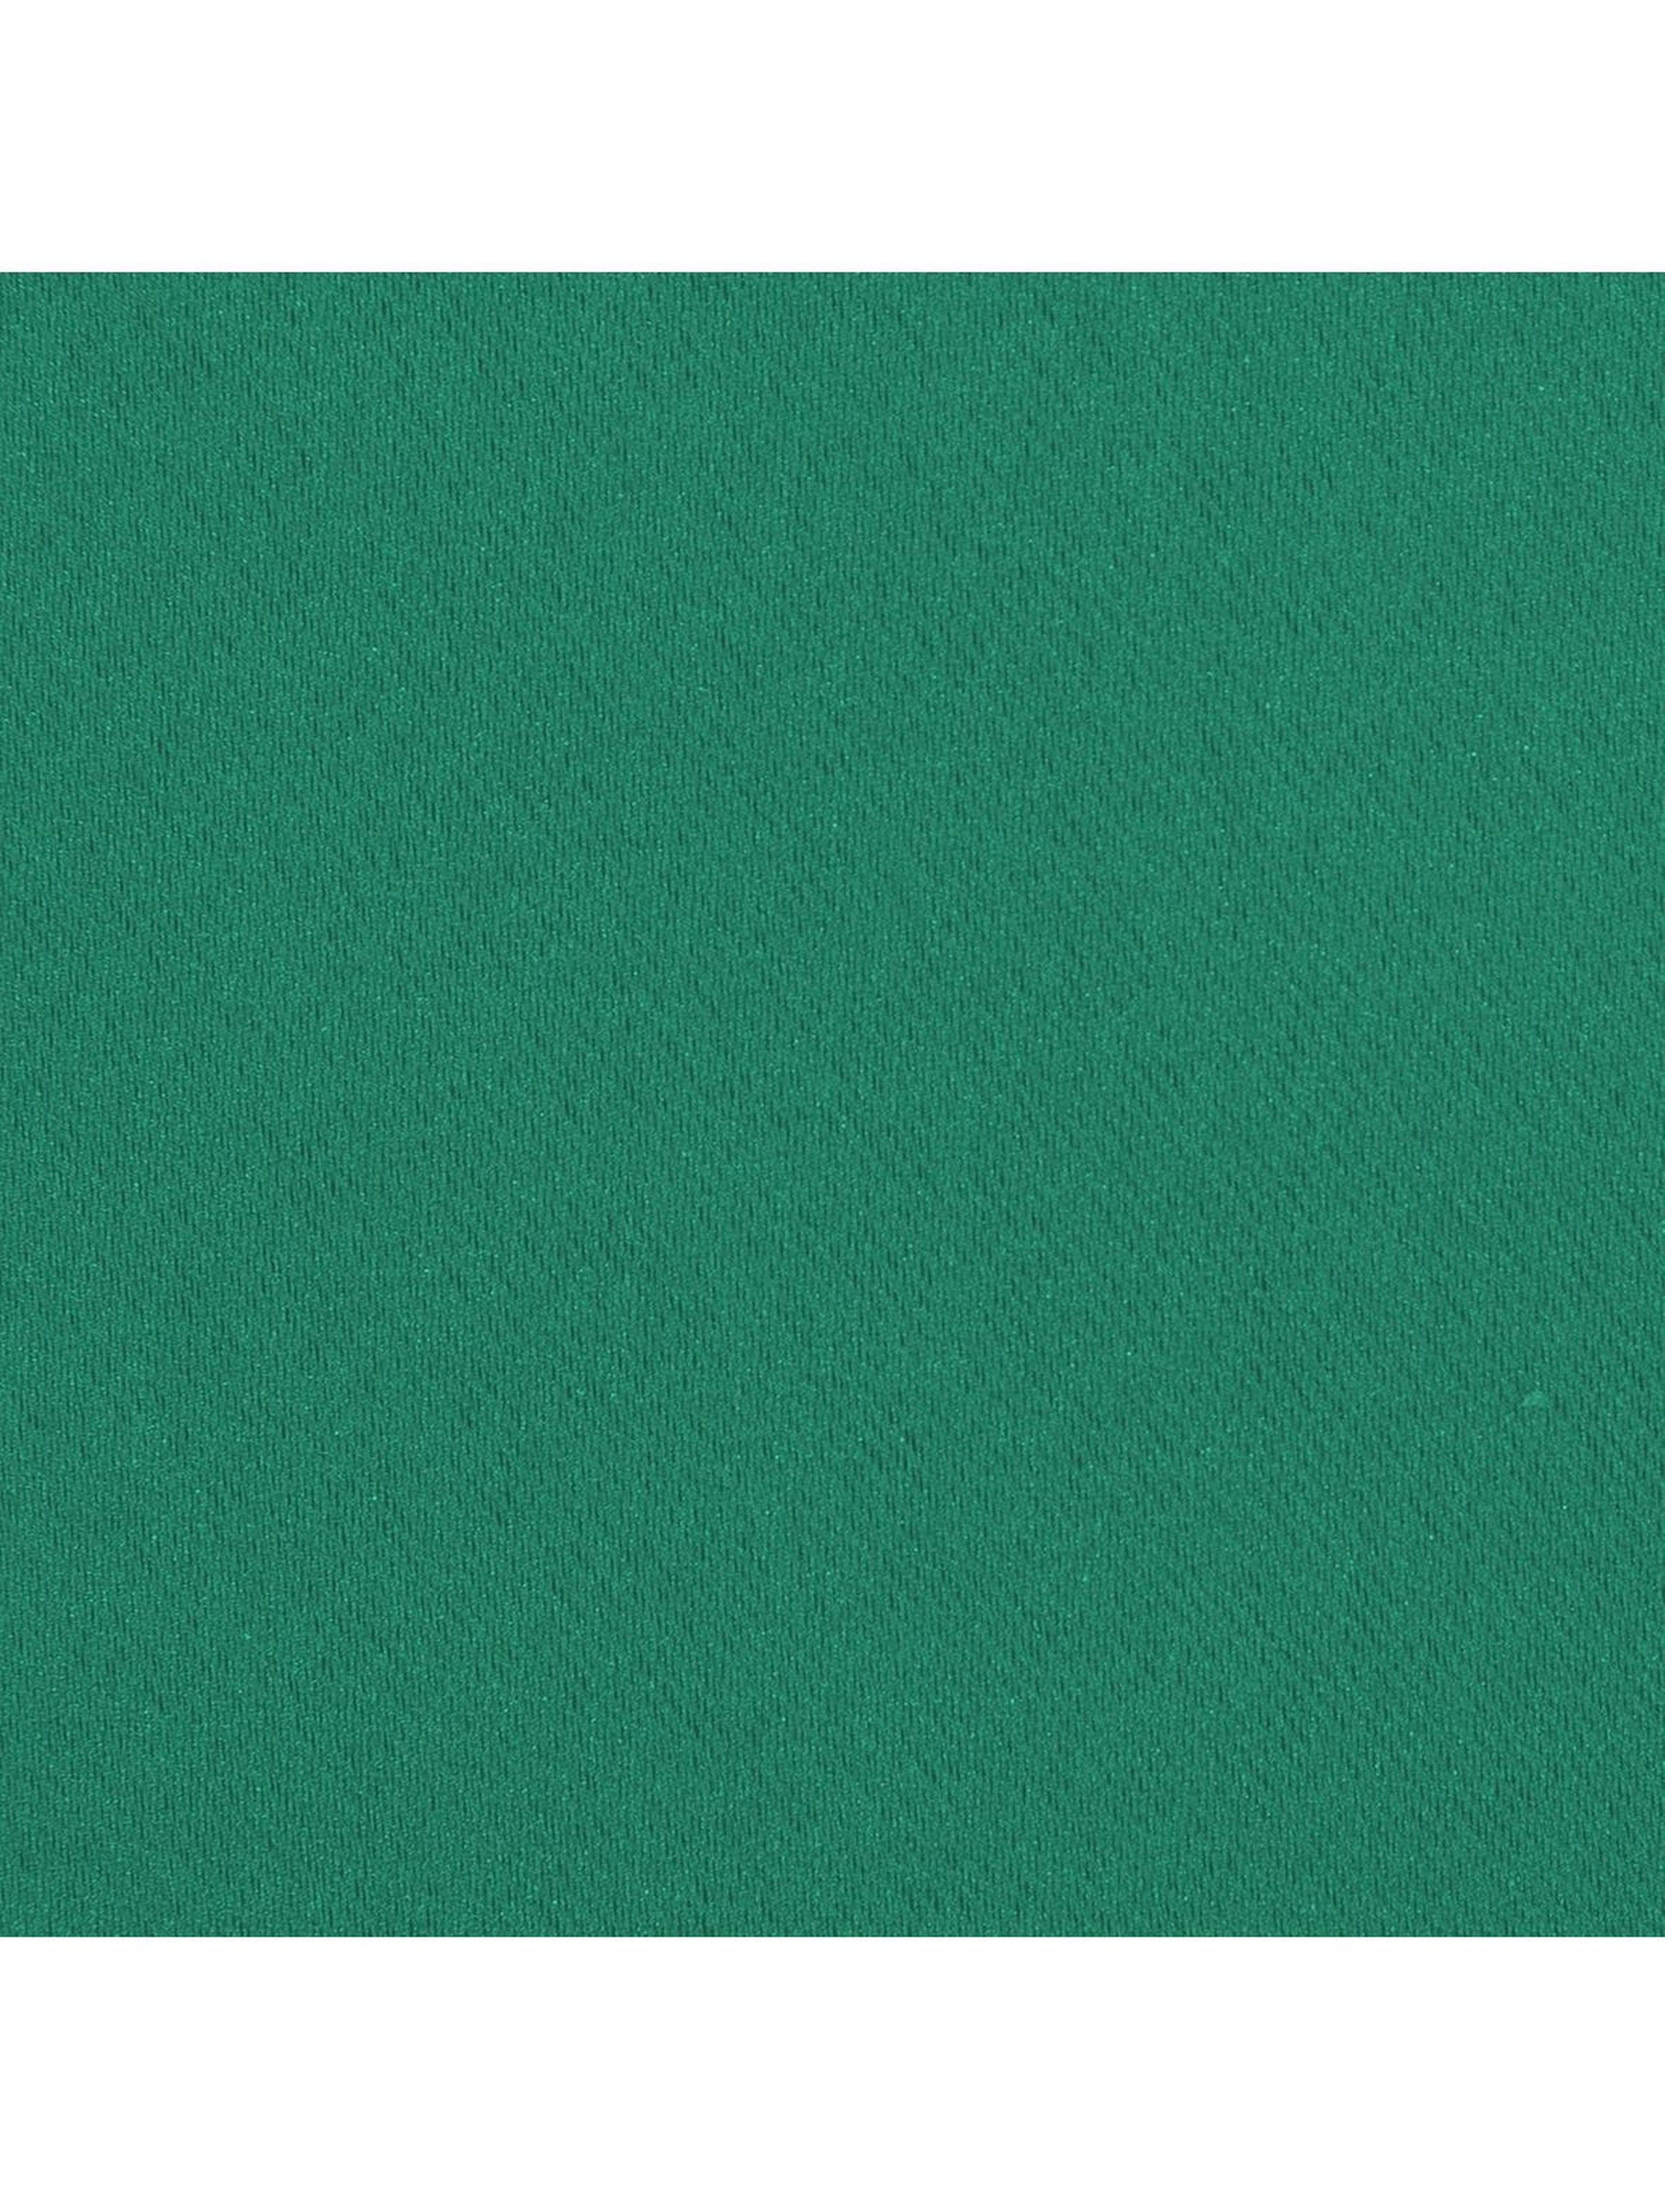 Zasłona jednokolorowa zaciemniająca - zielona - 135x270cm